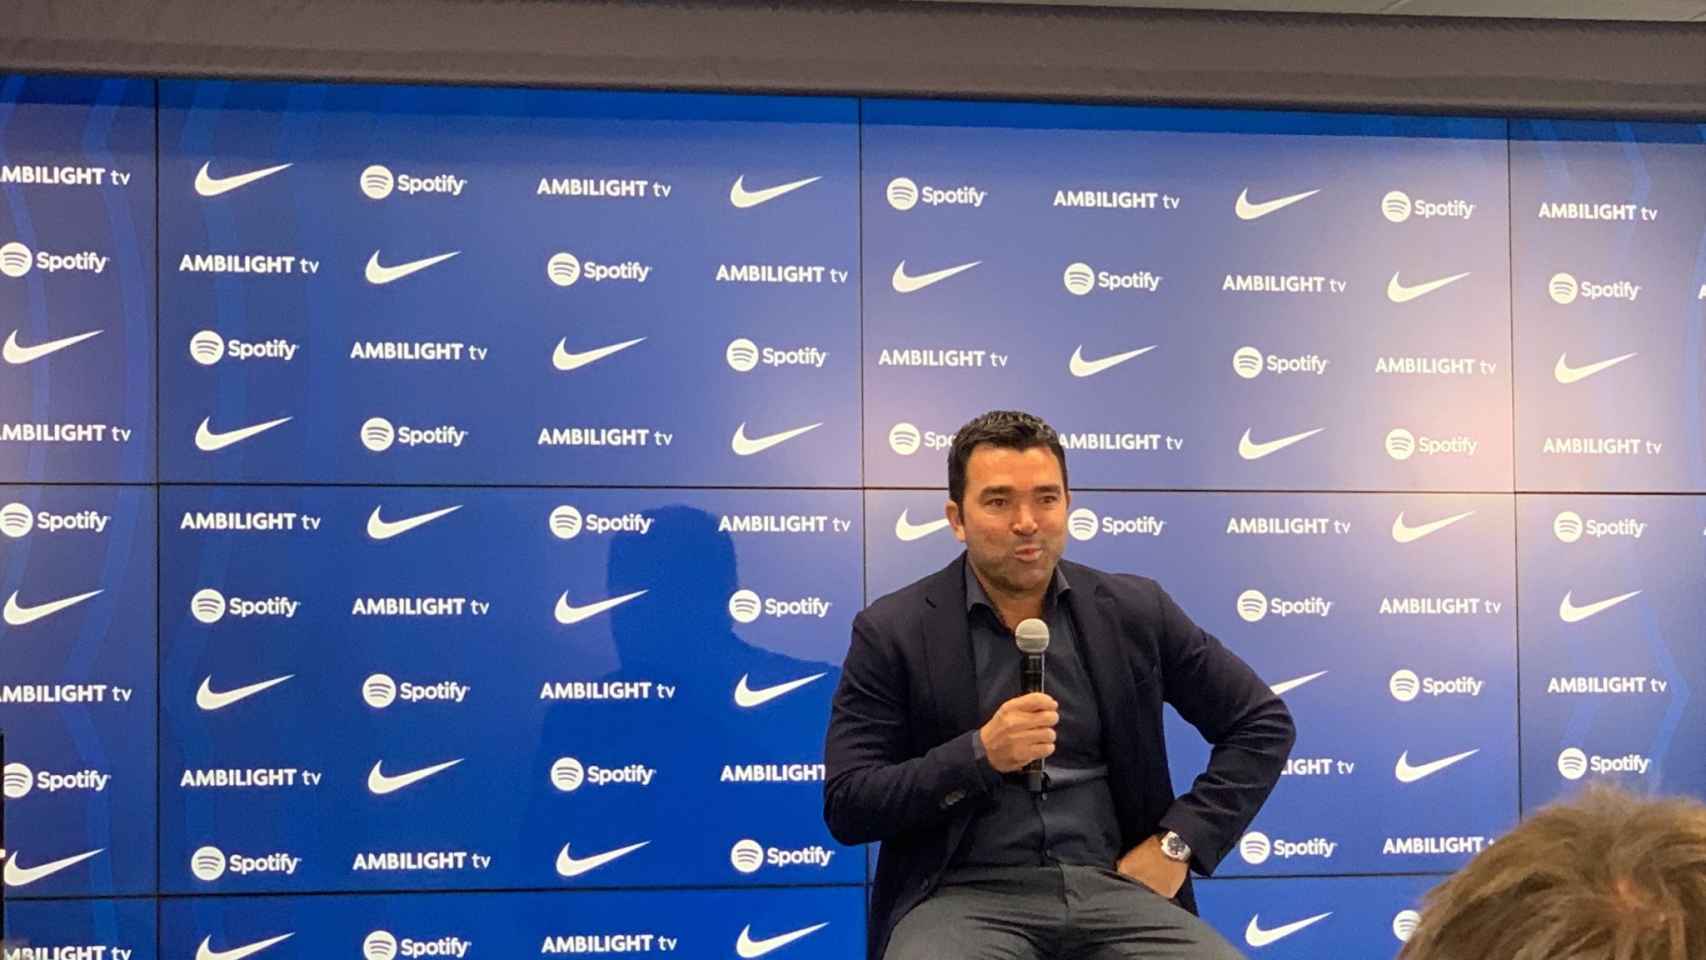 Deco sonríe en su presentación como nuevo director de fútbol del Barça